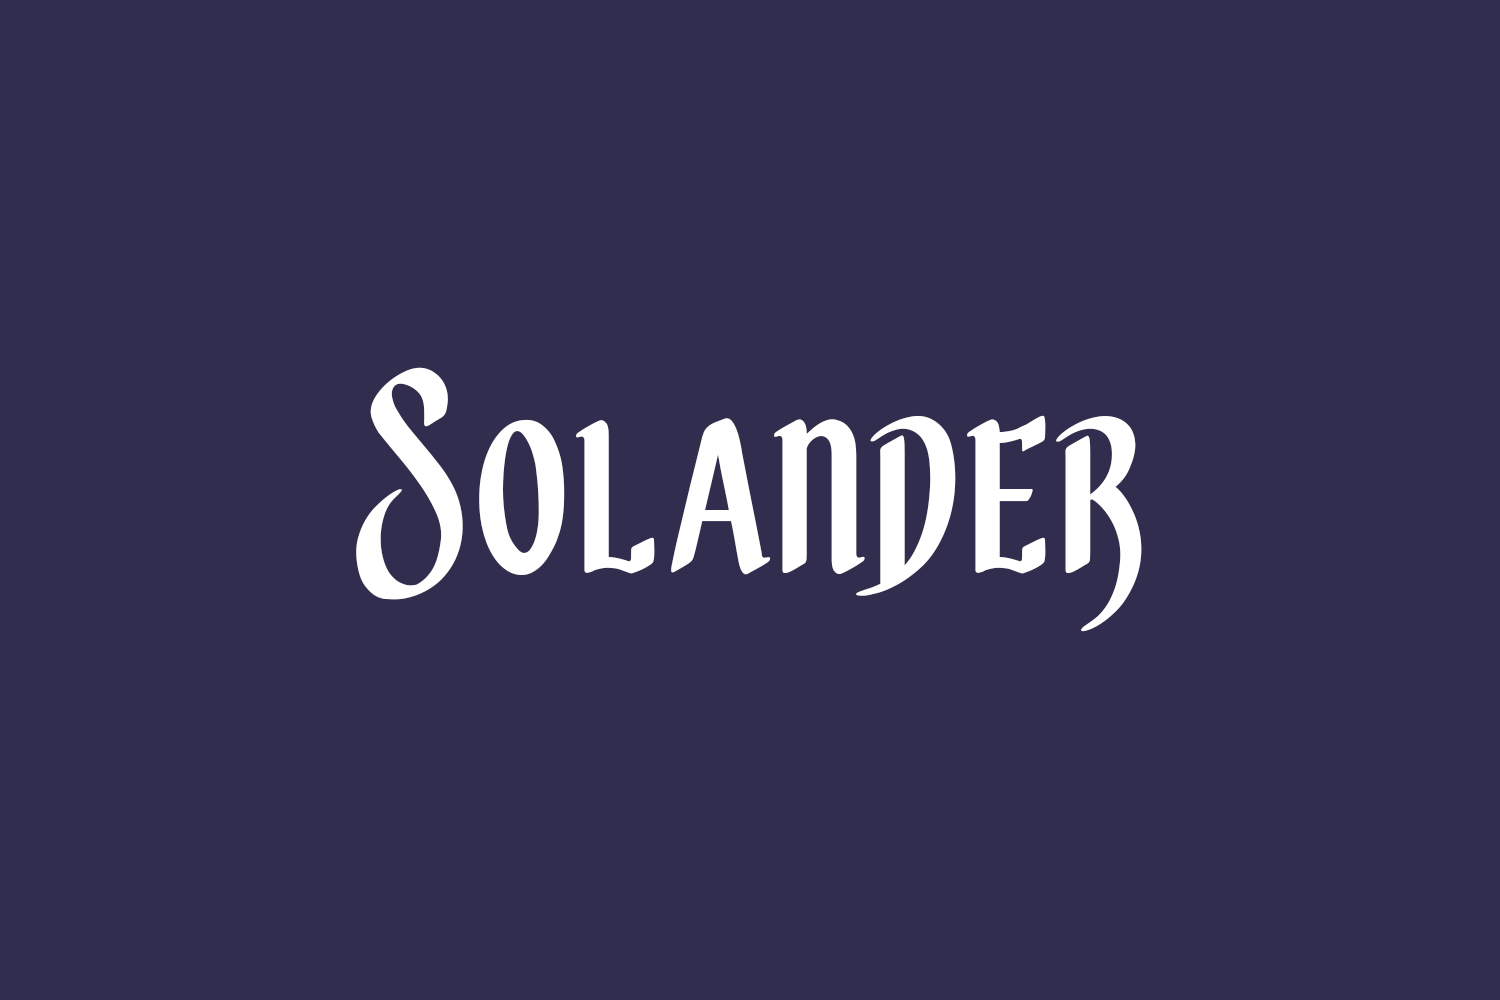 Solander Free Font